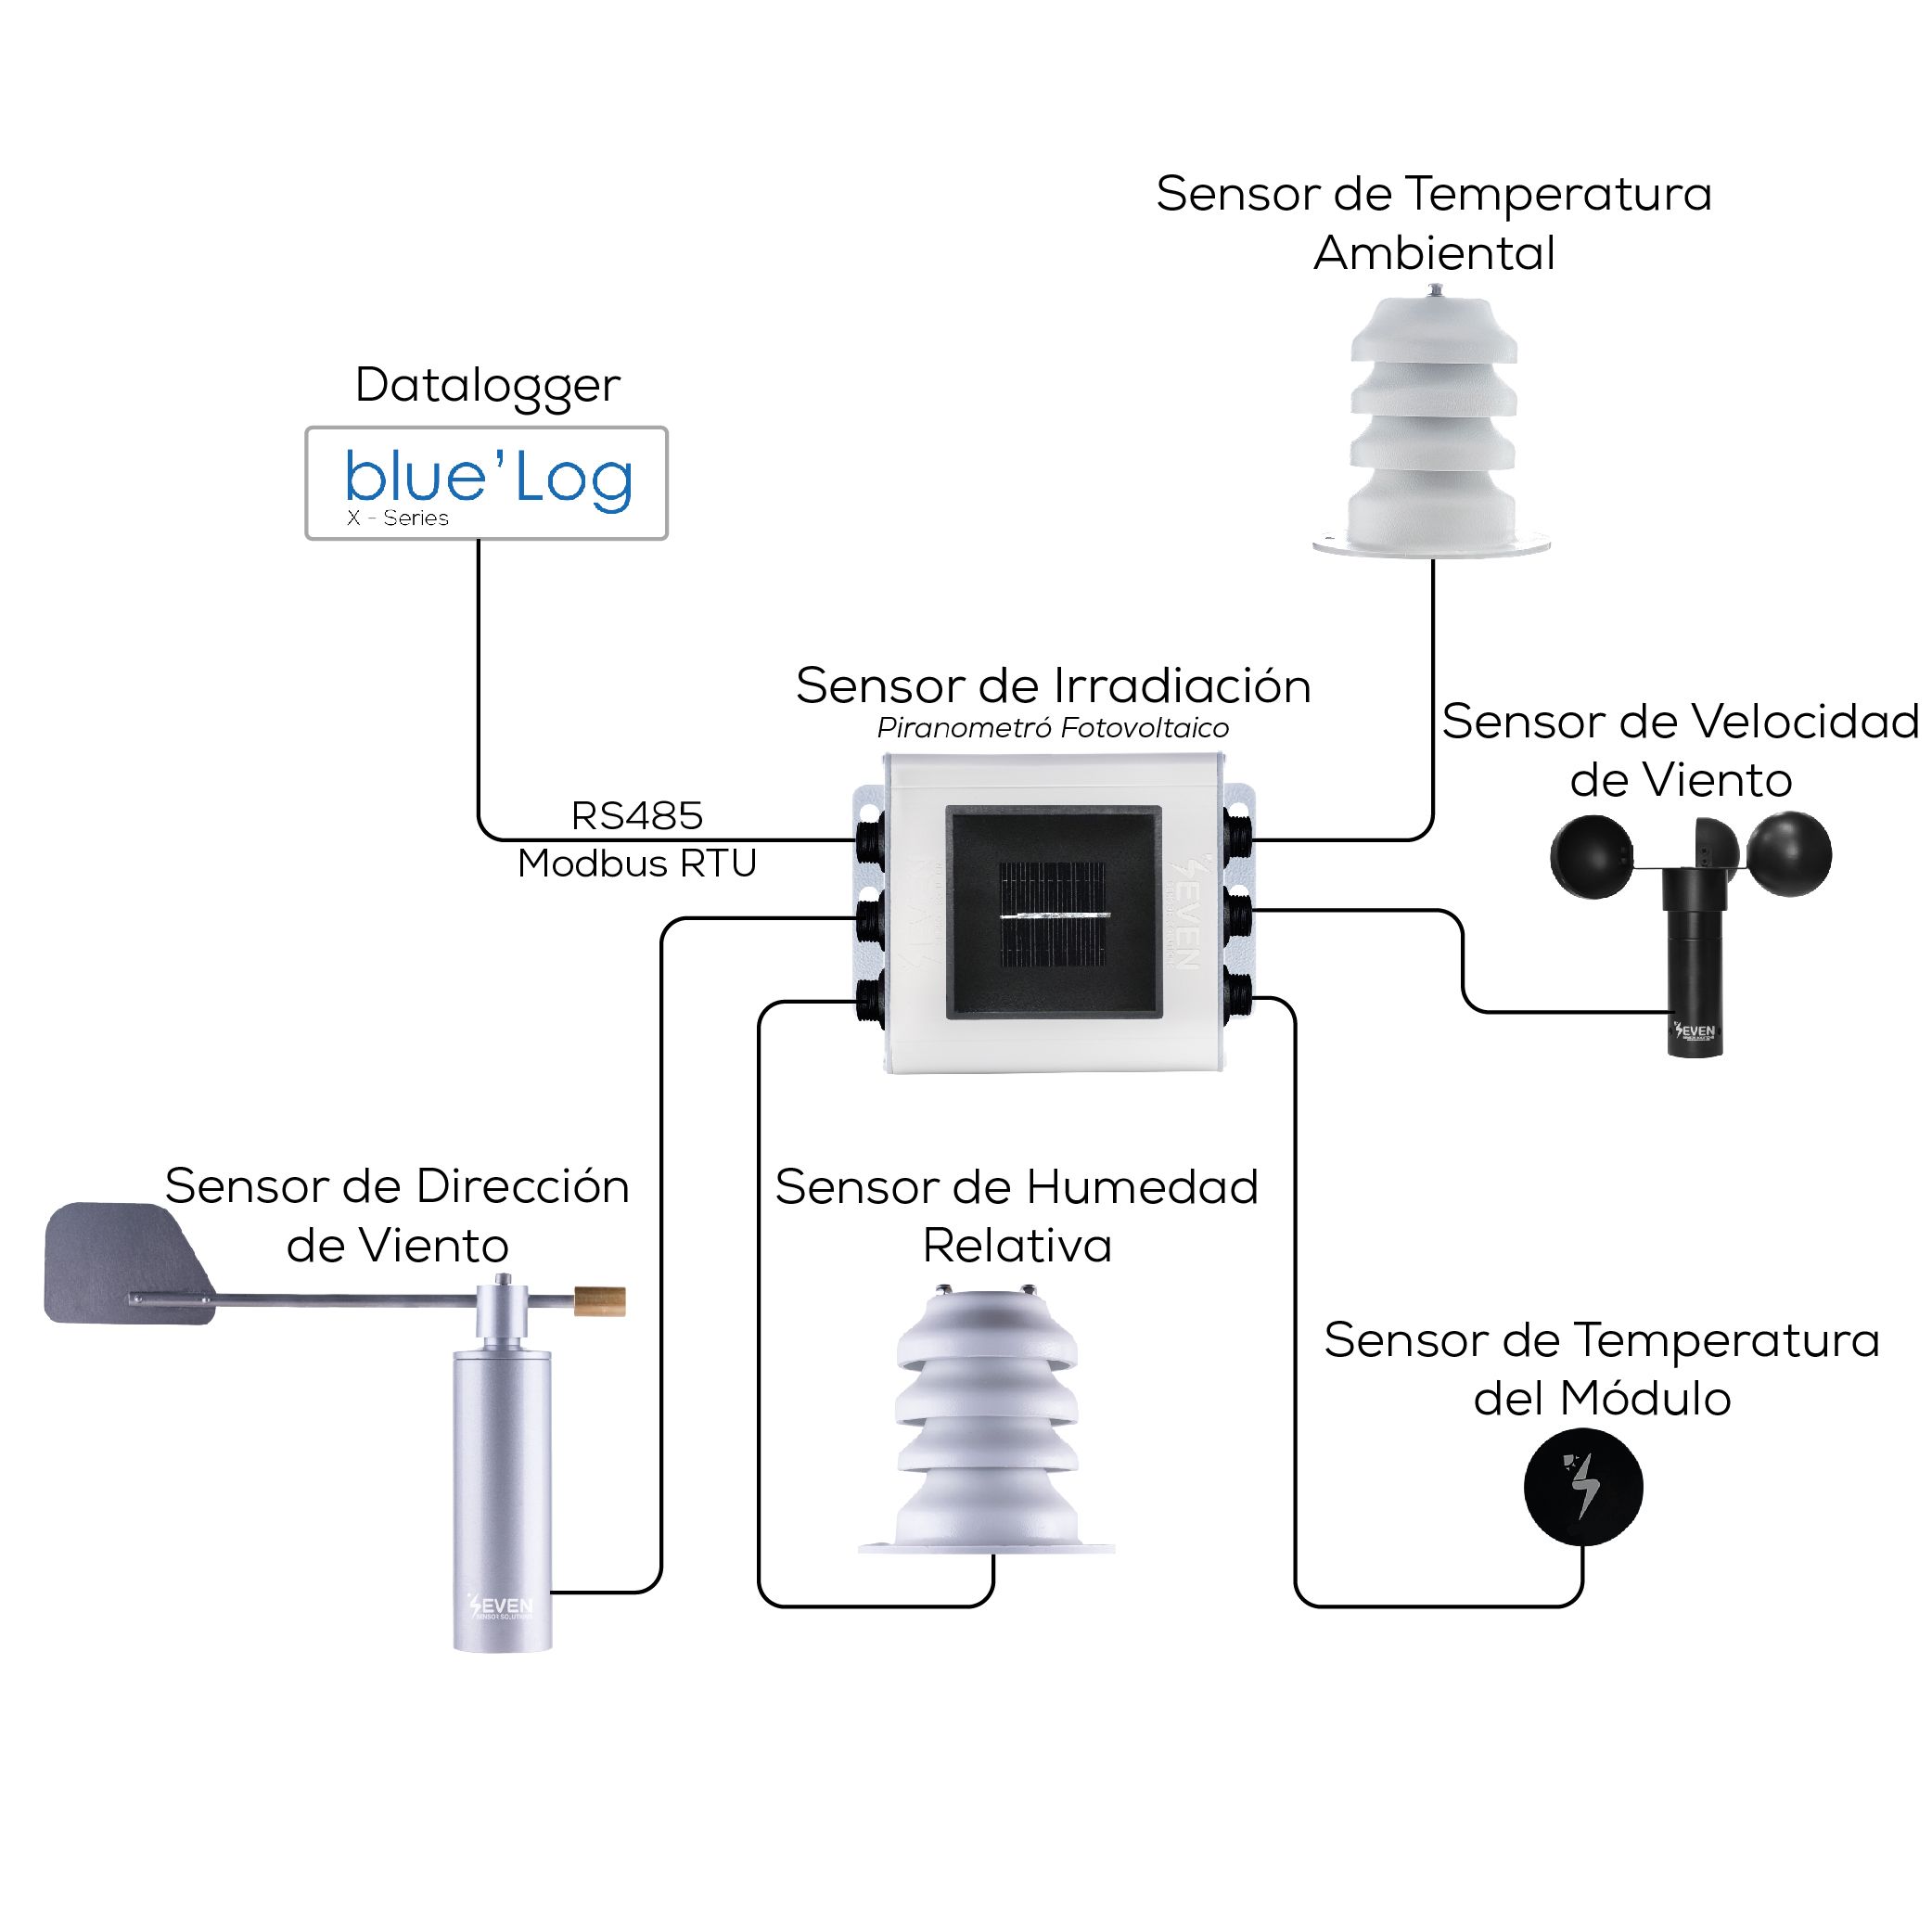 Sensor de Temperatura y Humedad Relativa del Ambiente, Aire.